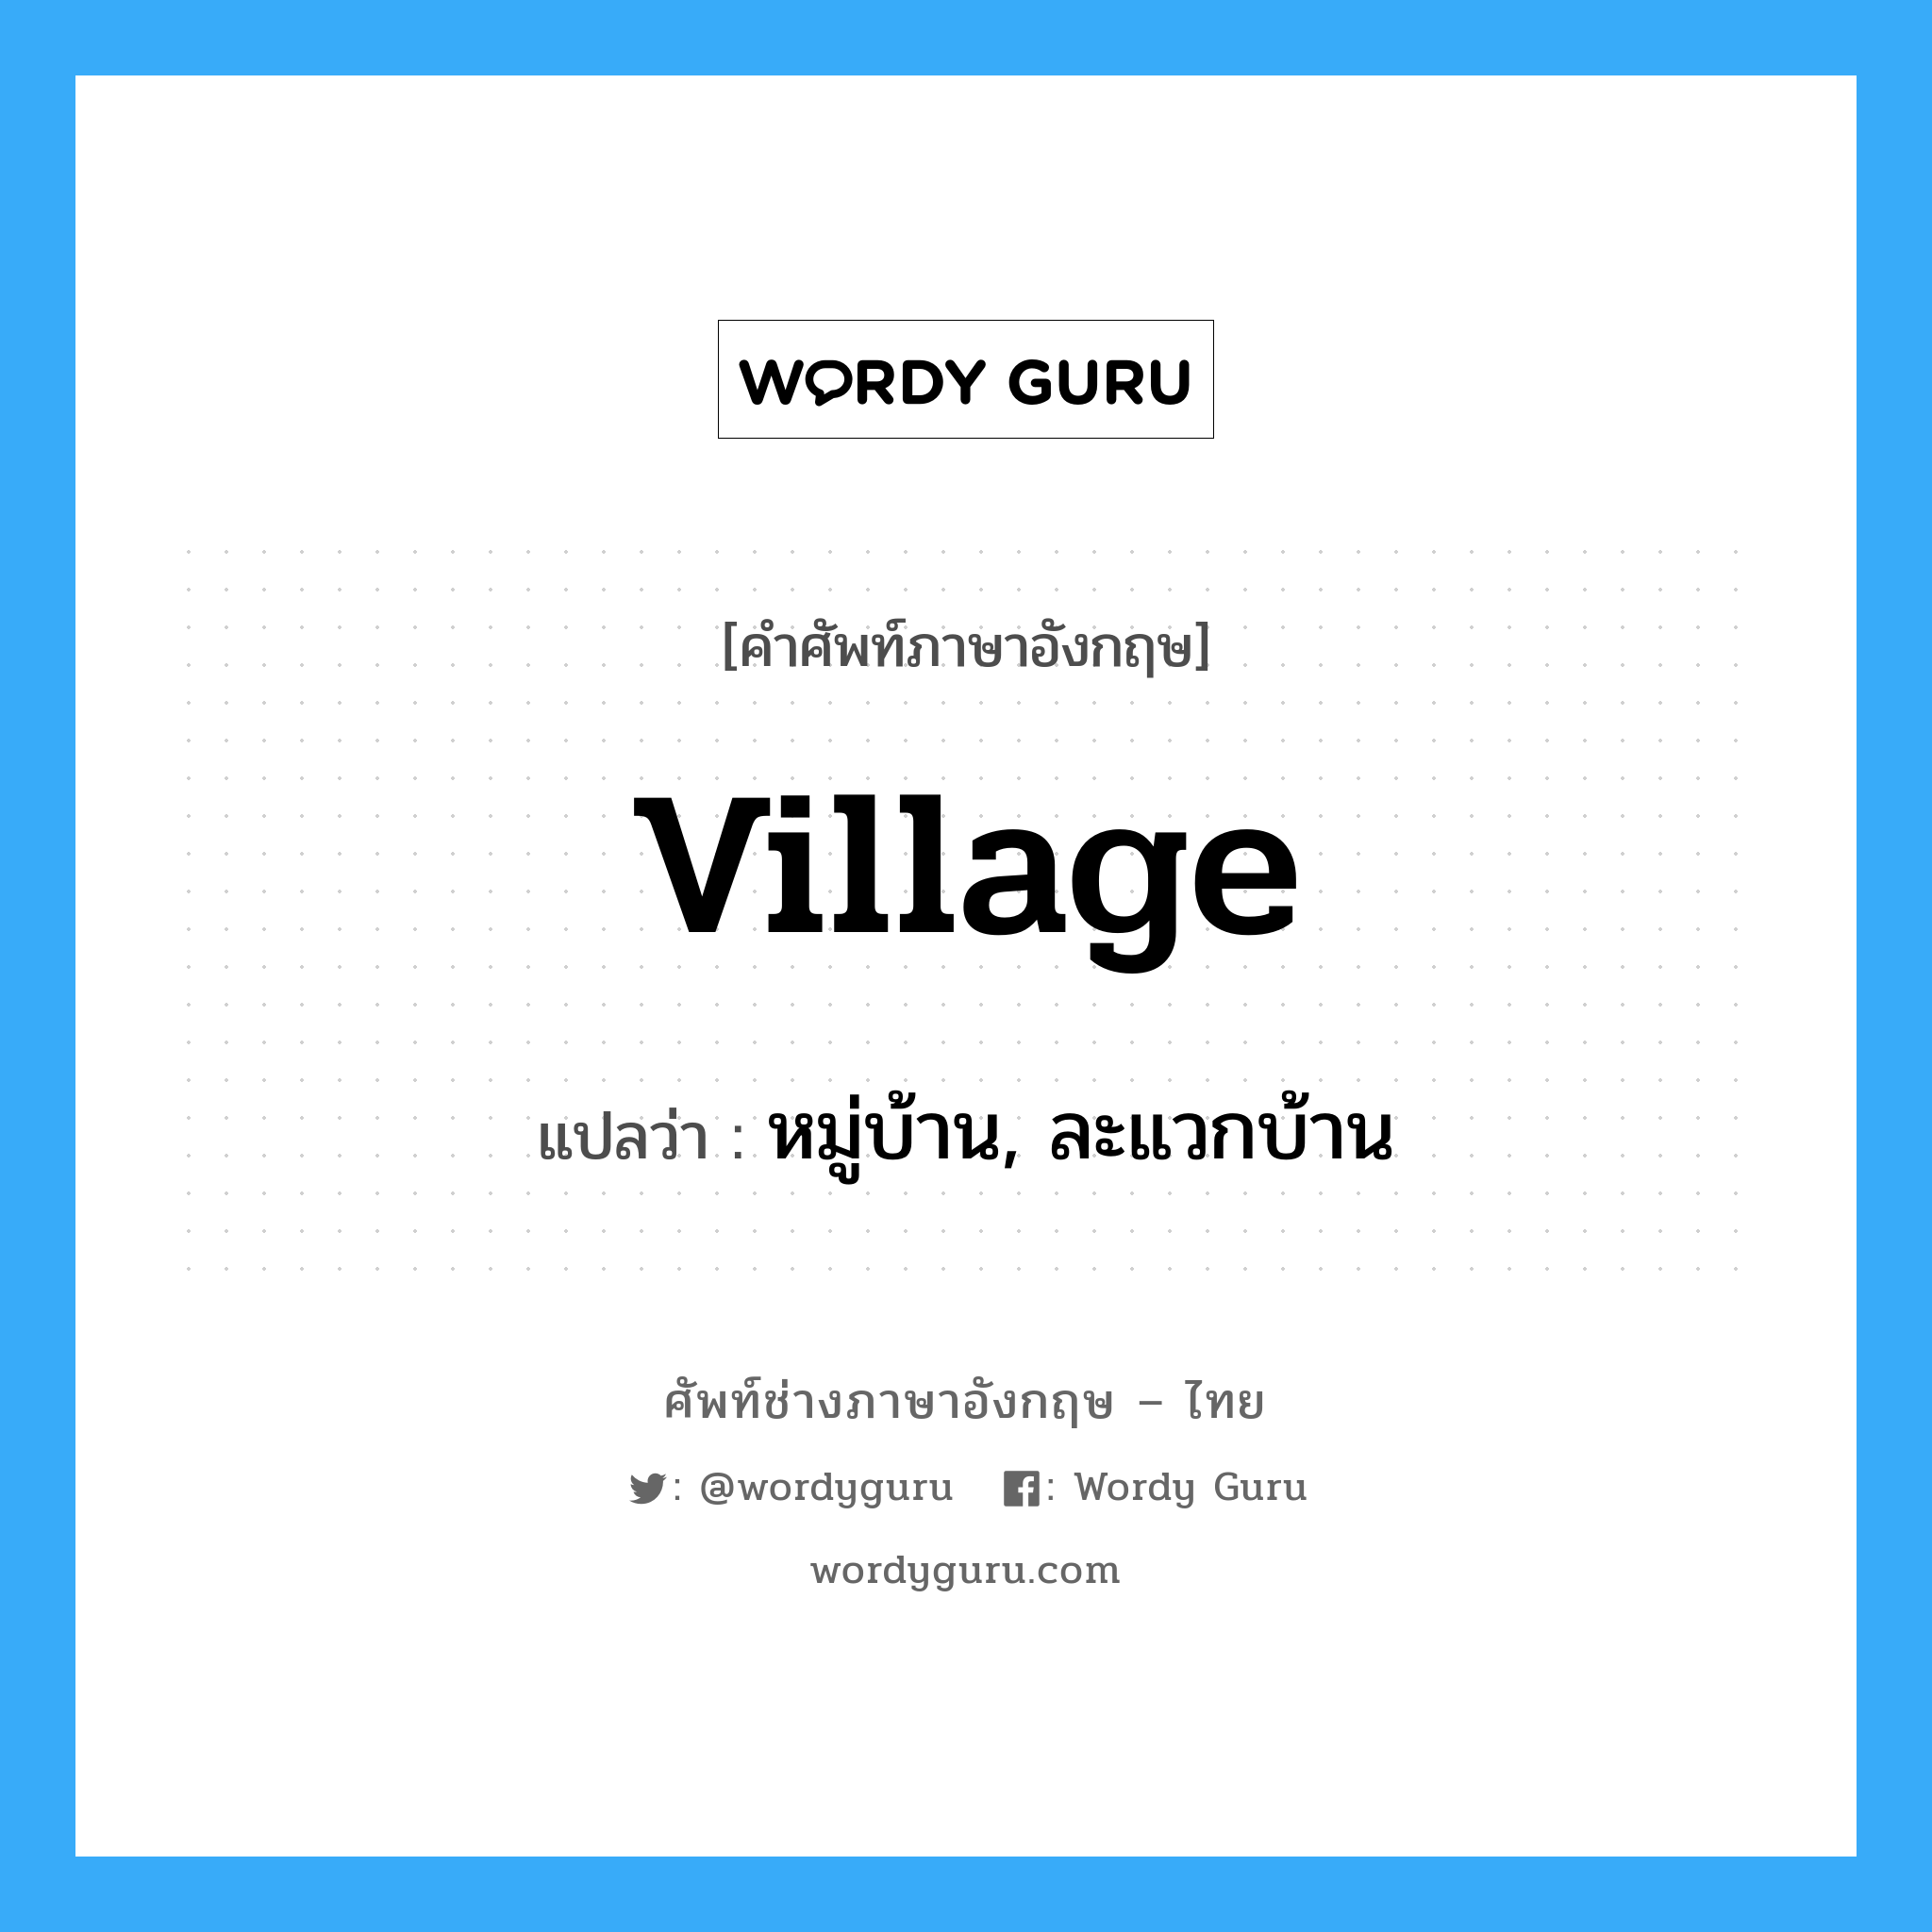 หมู่บ้าน, ละแวกบ้าน ภาษาอังกฤษ?, คำศัพท์ช่างภาษาอังกฤษ - ไทย หมู่บ้าน, ละแวกบ้าน คำศัพท์ภาษาอังกฤษ หมู่บ้าน, ละแวกบ้าน แปลว่า village